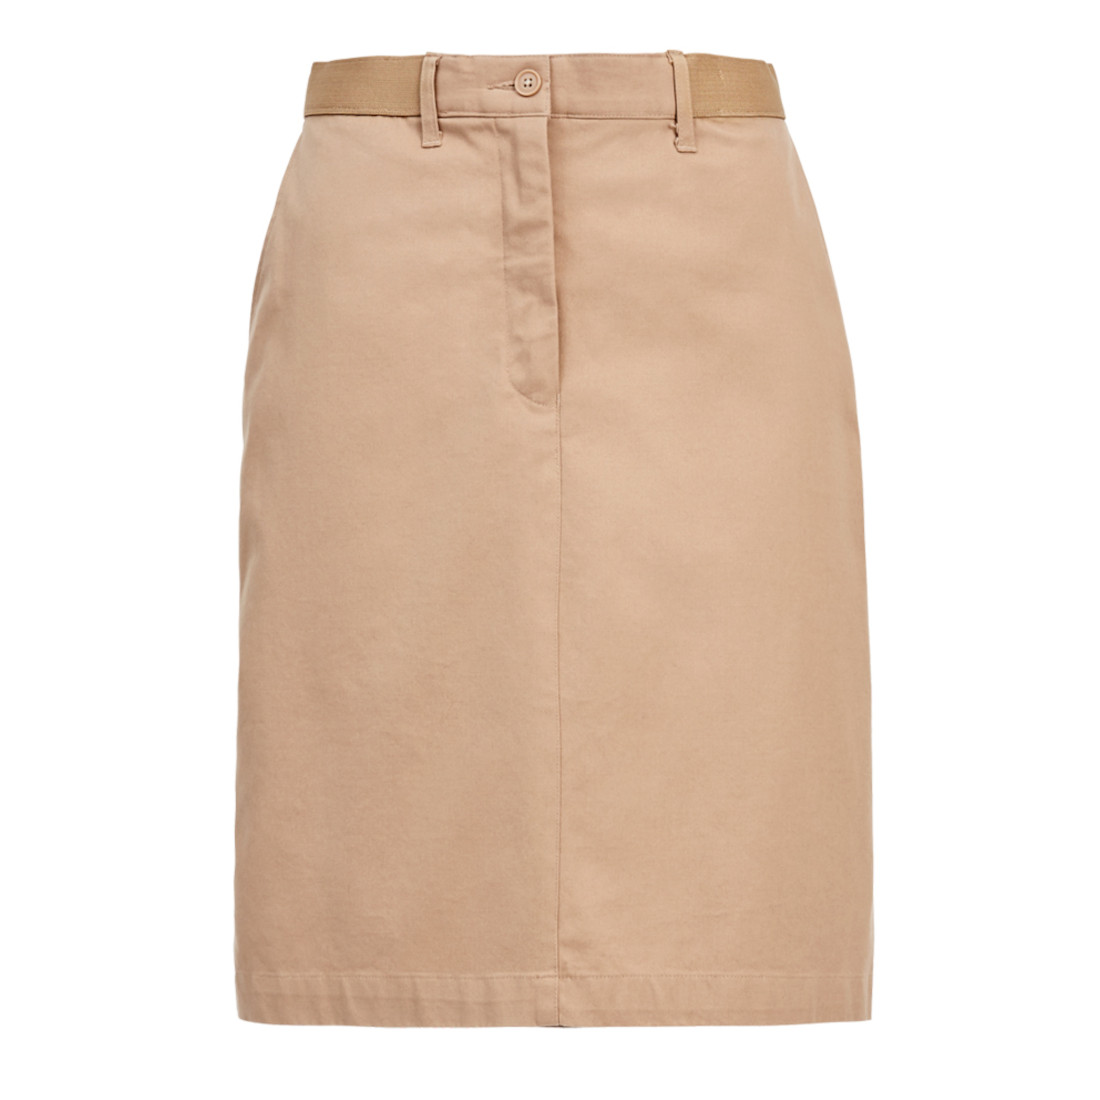 Chino Skirt, beige | NNT Uniforms